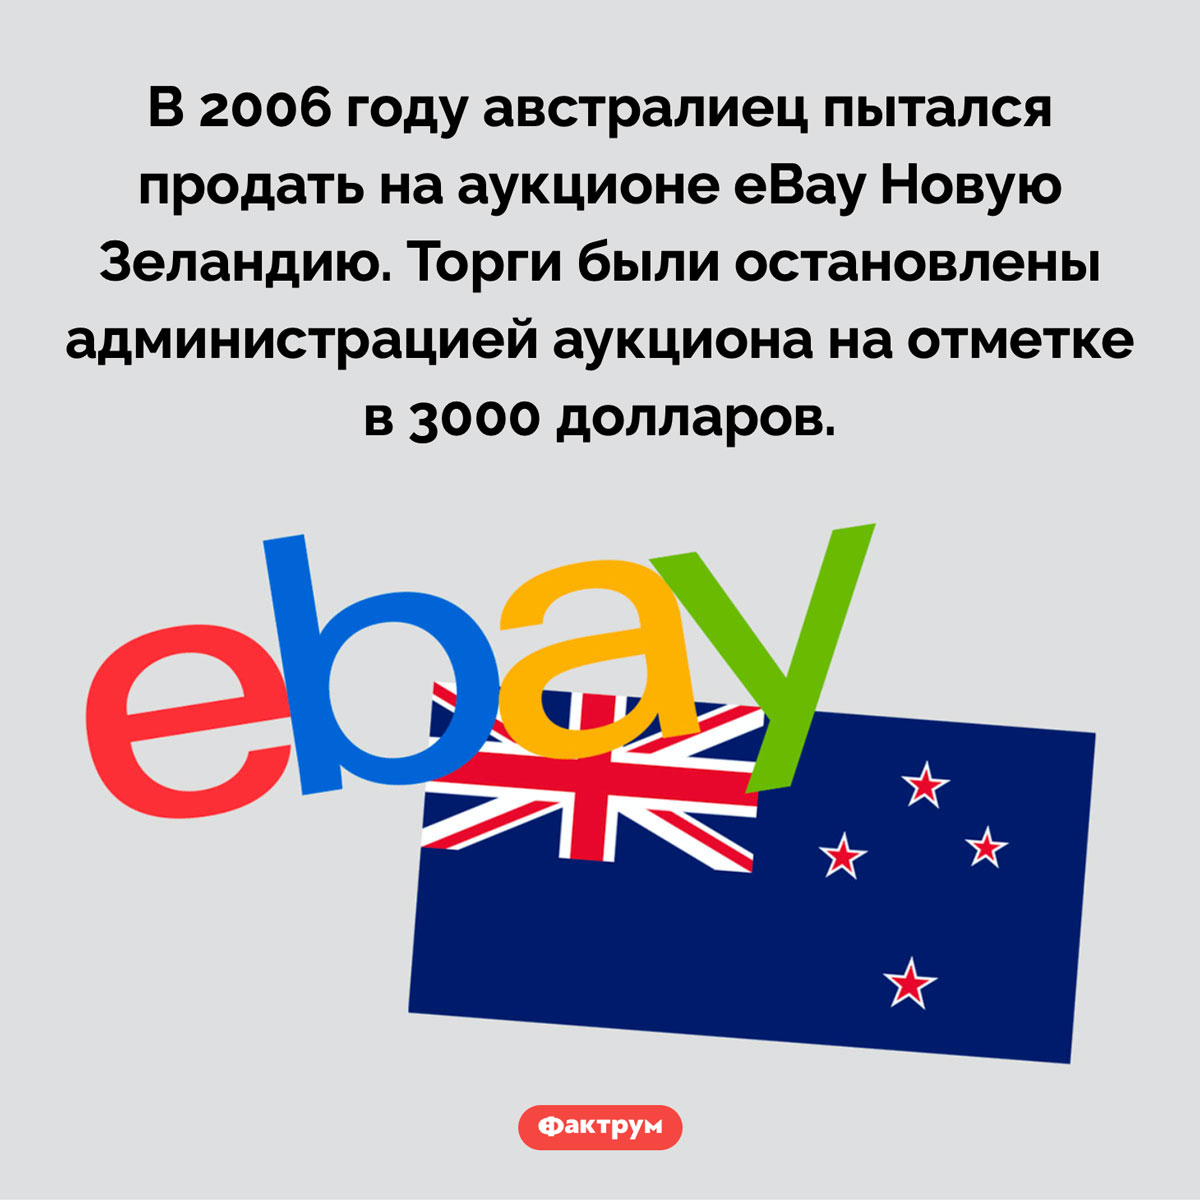 Продажа Новой Зеландии на аукционе. В 2006 году австралиец пытался продать на аукционе eBay Новую Зеландию. Торги были остановлены администрацией аукциона на отметке в 3000 долларов.